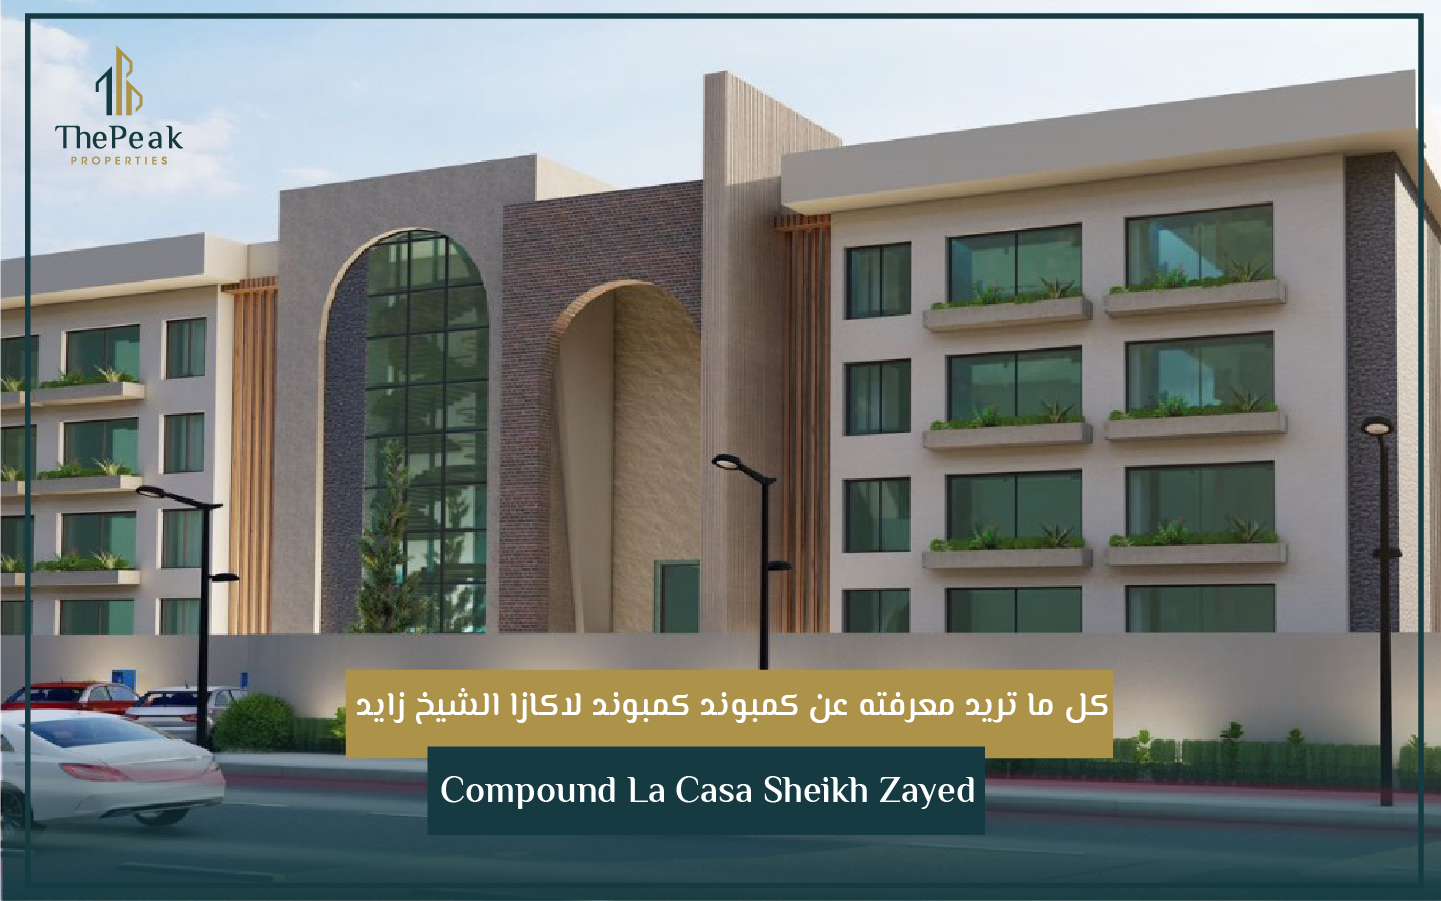 "شقة للبيع بالتقسيط بالشيخ زايد   مساحة 172 م + 62 م حديقة  مقدم 15 % و تقسيط علي 5 سنوات  في كمبوند Lacasa compound El Sheikh Zayed" | THE PEAK PROPERTIES